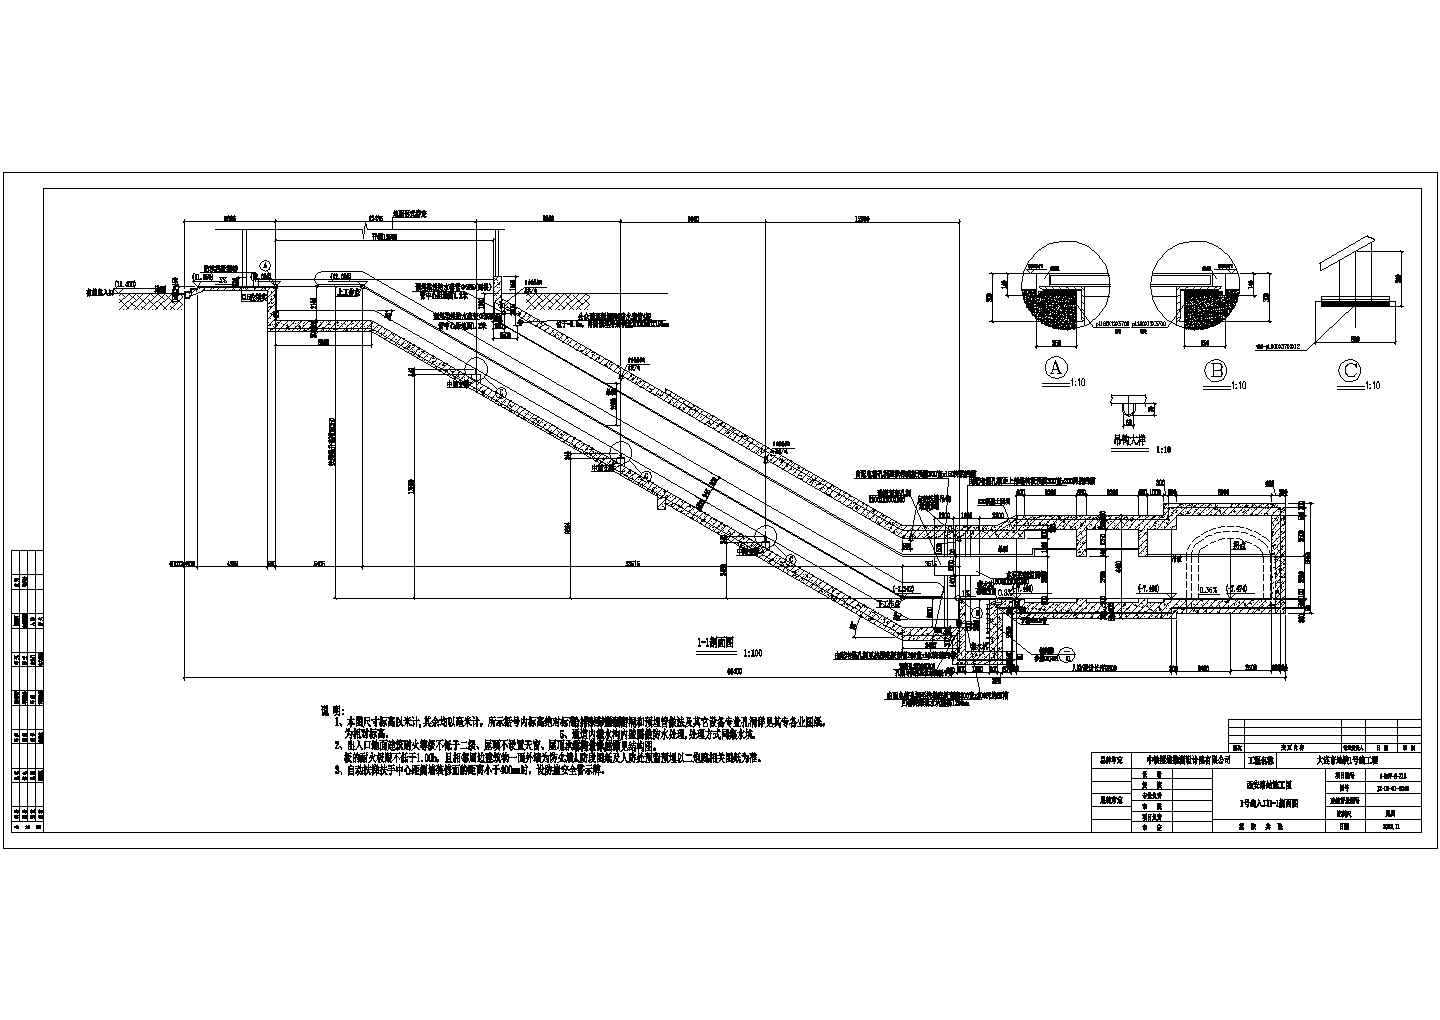 【大连市】西安路地铁图纸出入口施工设计图